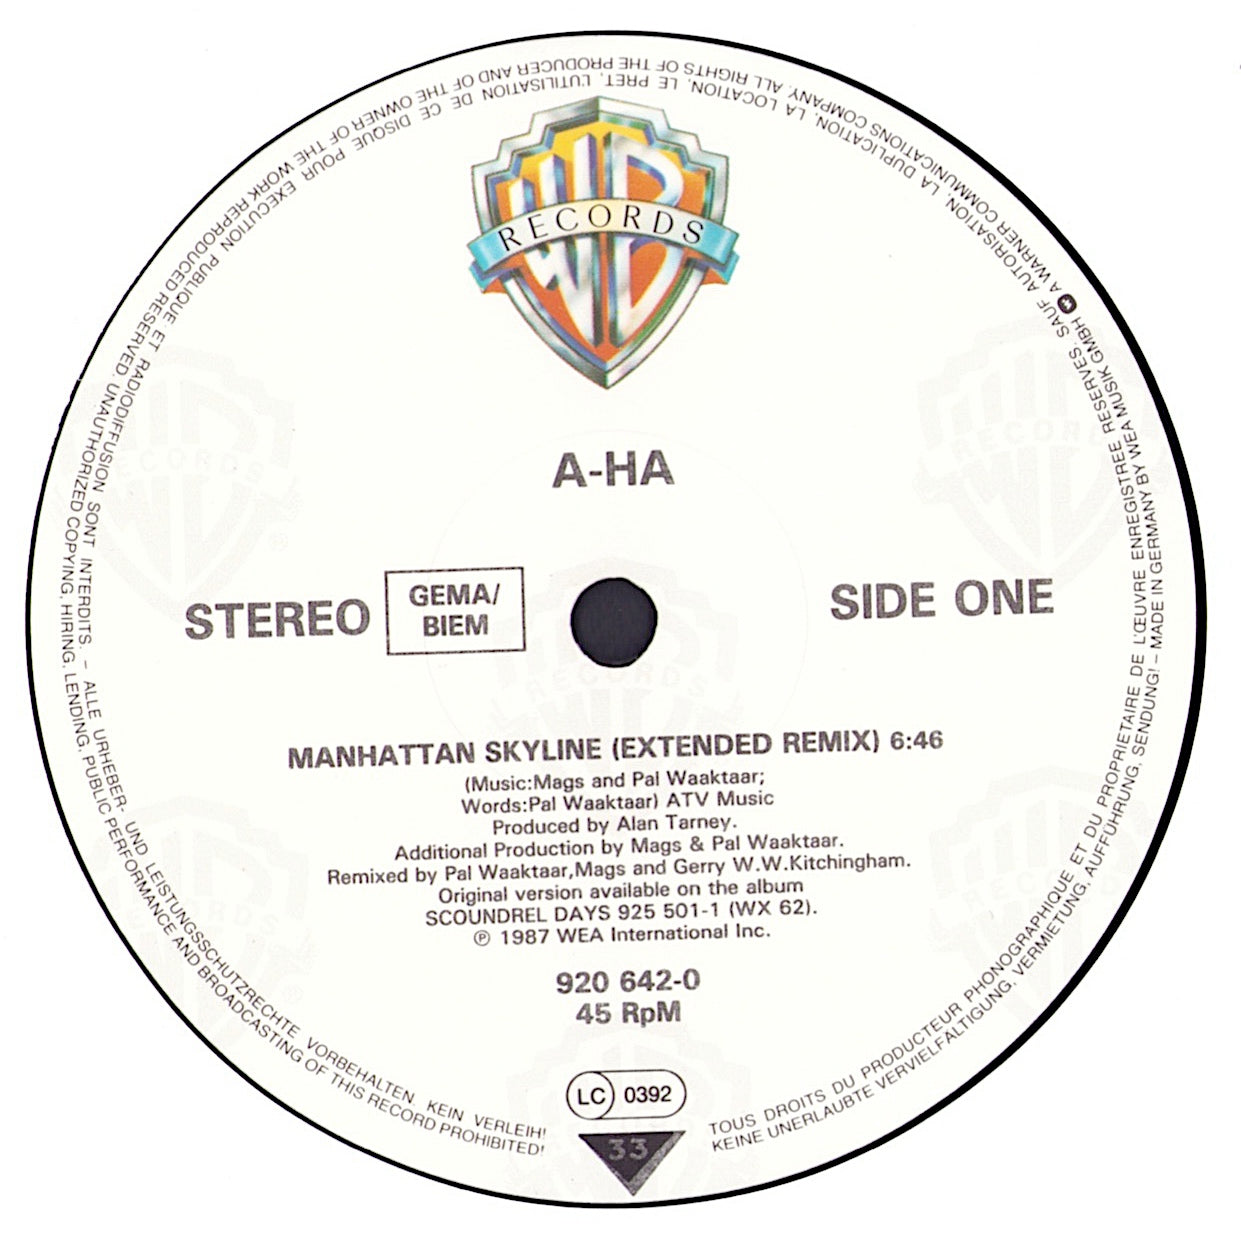 a-ha - Manhattan Skyline Extended Remix Vinyl 12" Maxi-Single